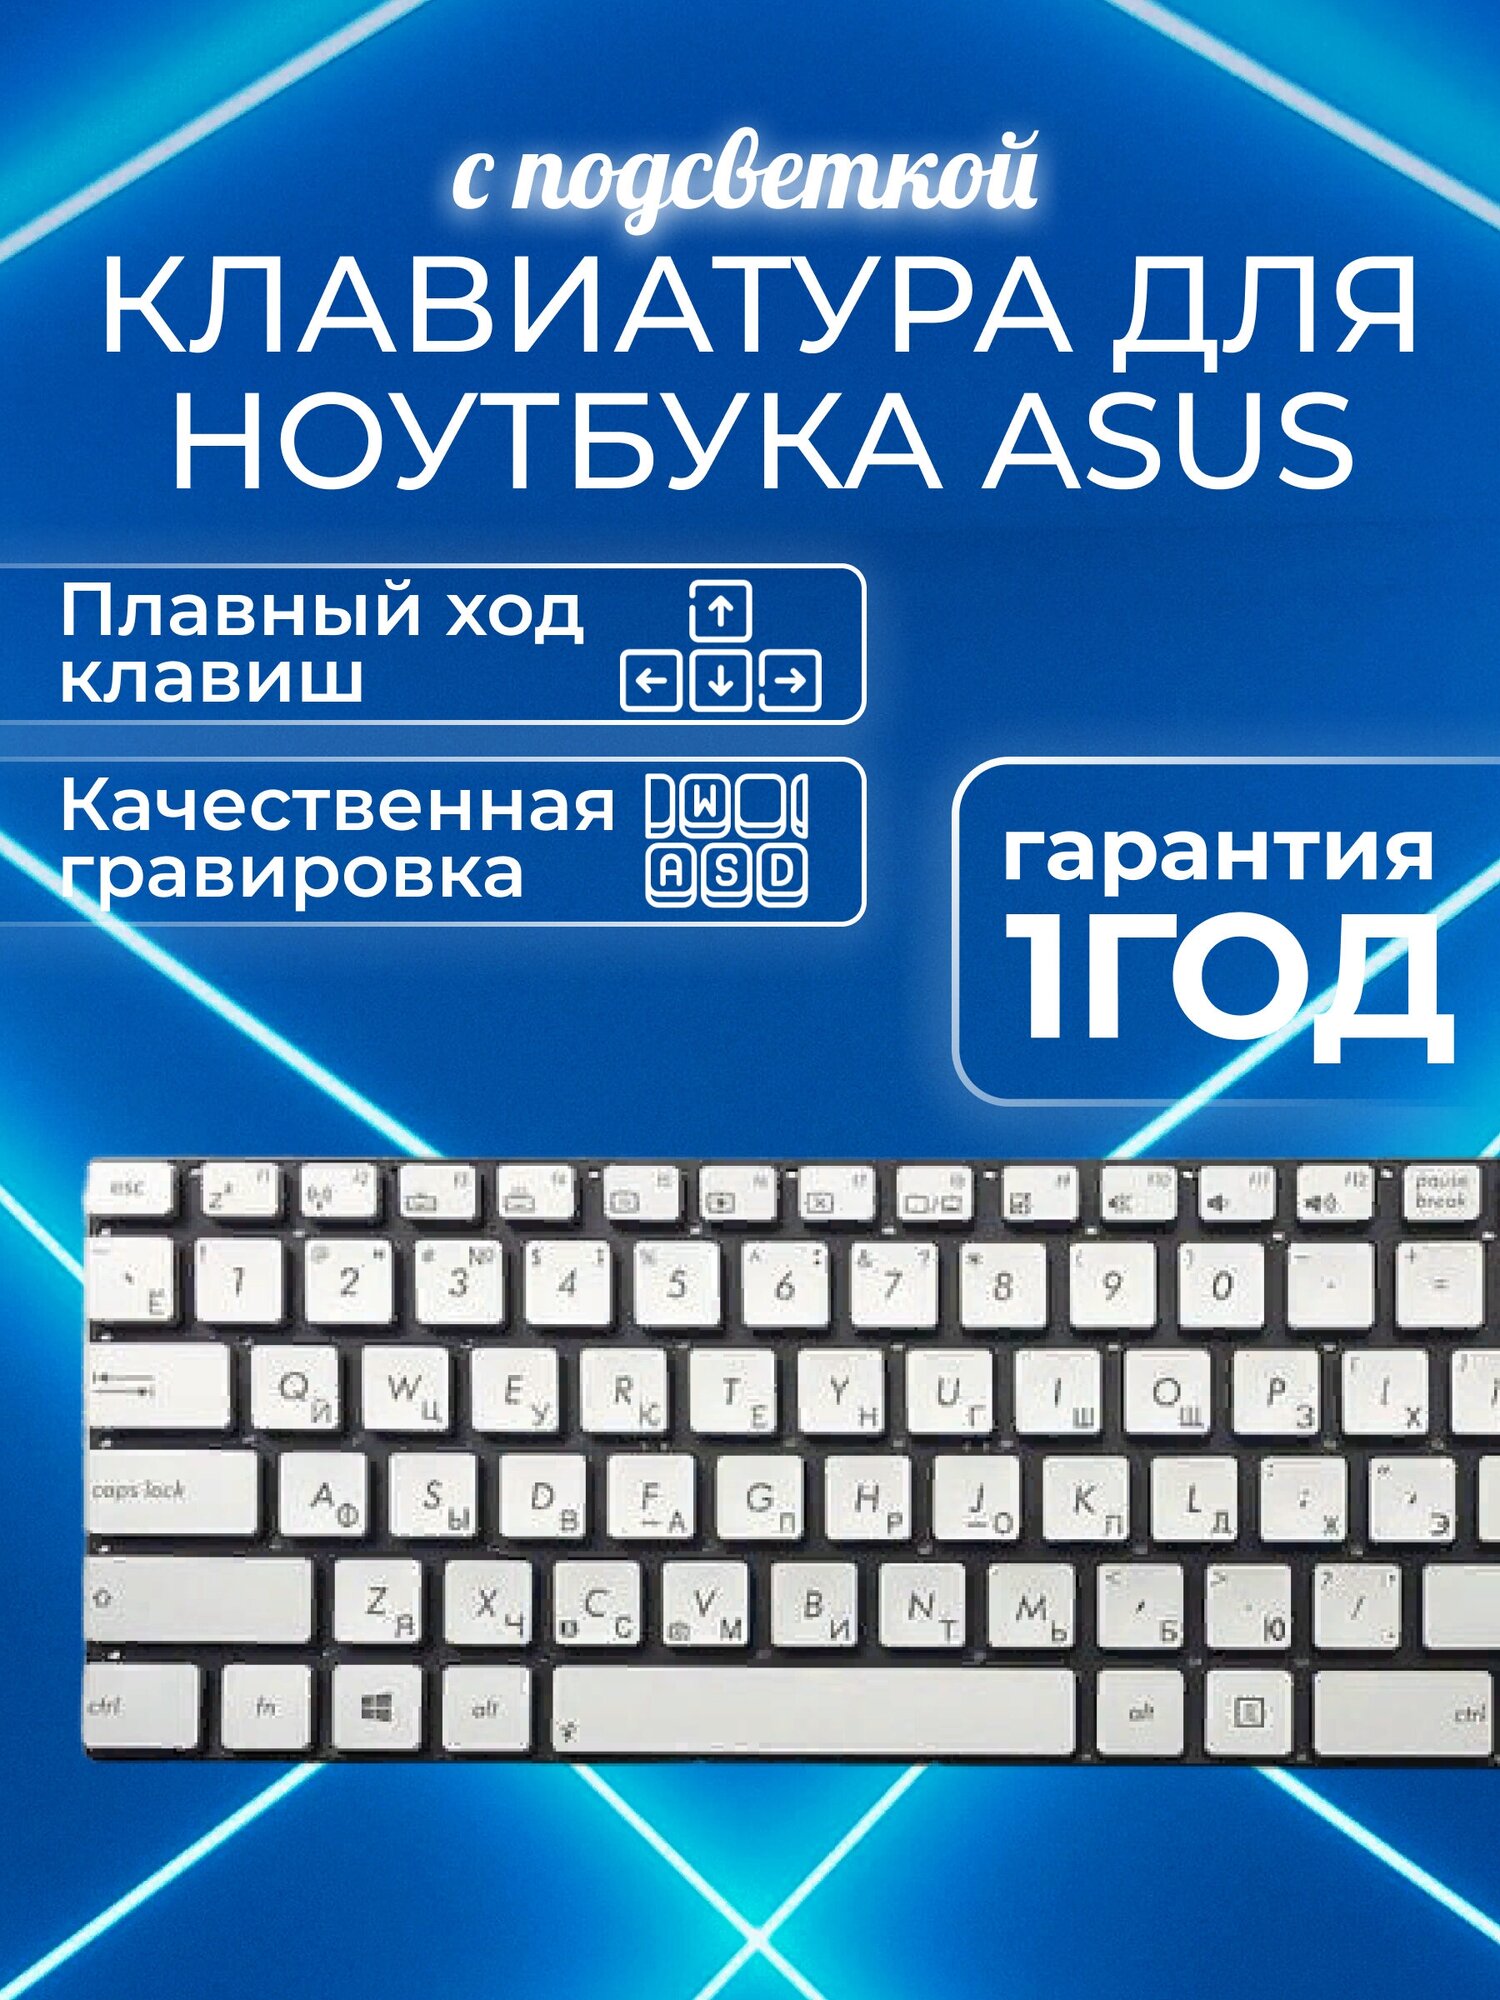 Клавиатура ZeepDeep для ноутбука Asus N550J, N550JA, N550JK, N550JV, N550JX, N550LF, N750, N750JV, N750JK, серебристая без рамки, с подсветкой